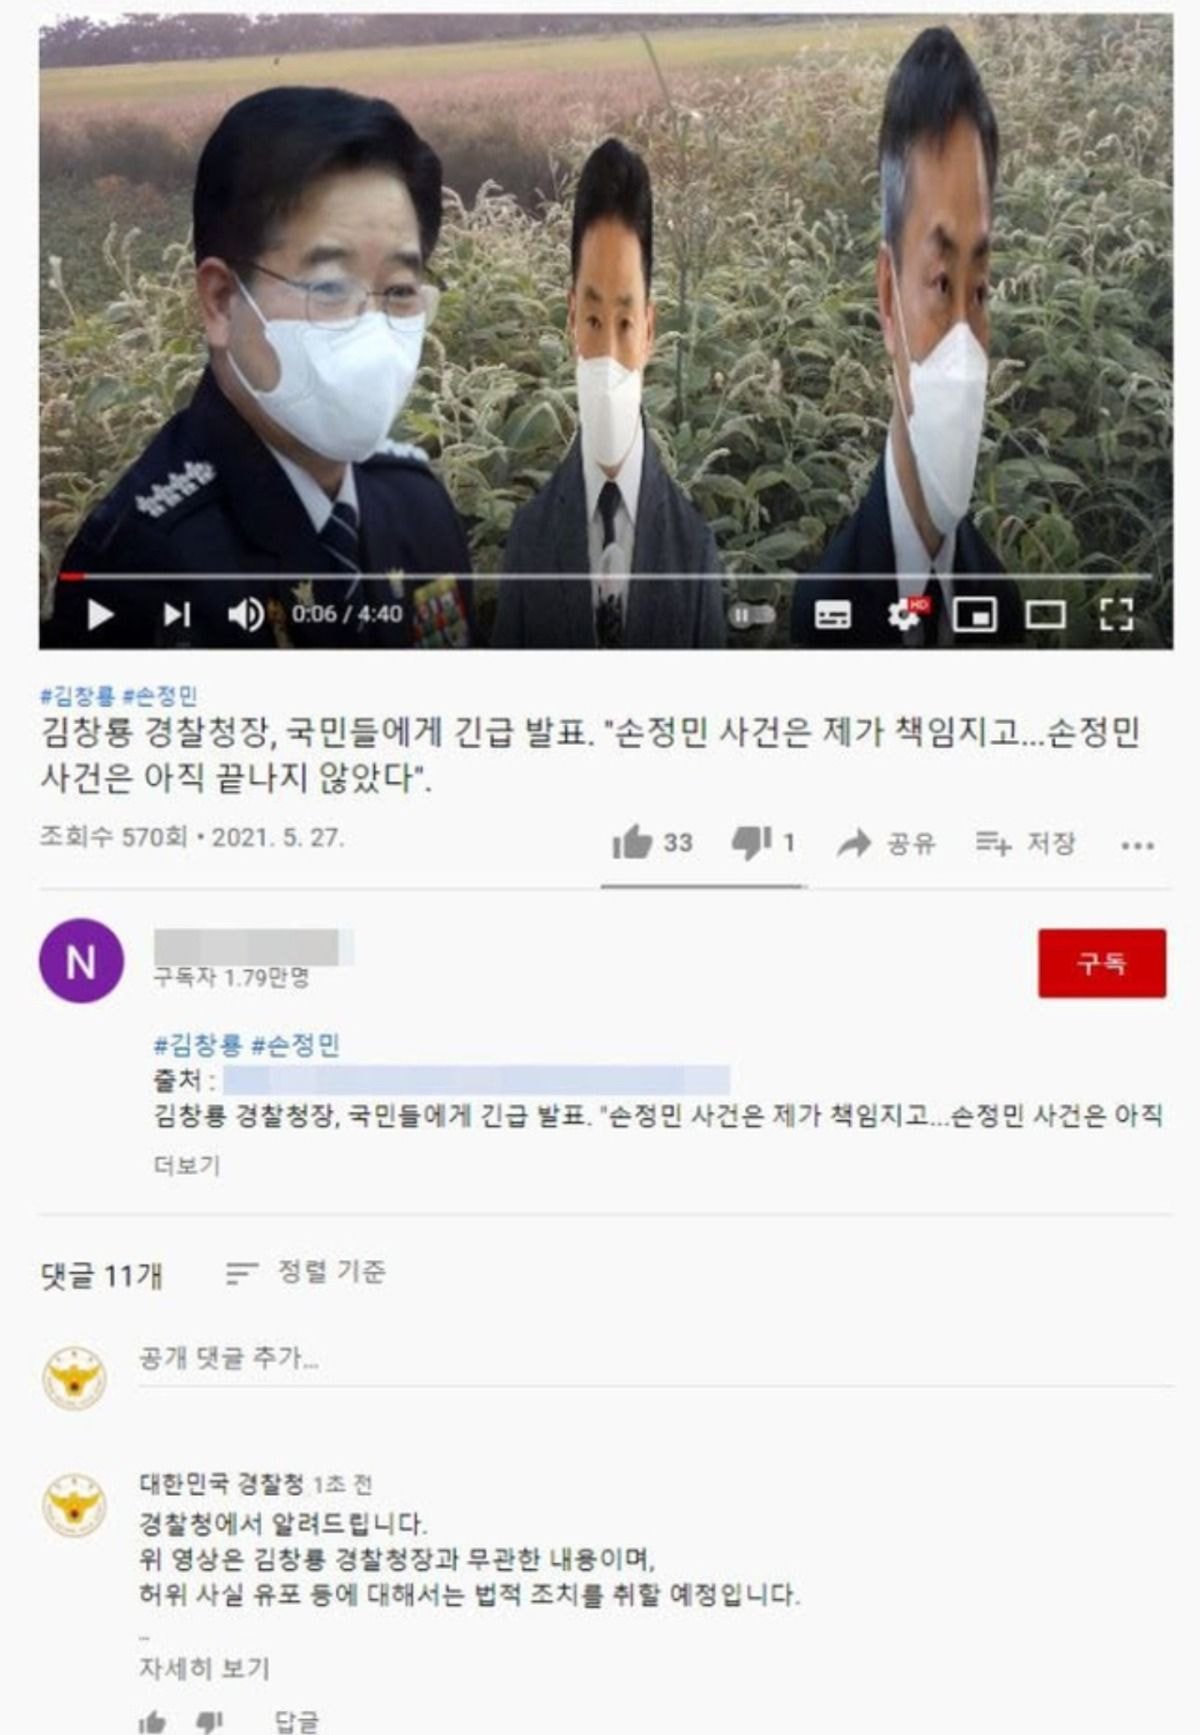 한강사건 경찰청장 가짜뉴스 퍼트린 유튜버, 경찰 수사 착수